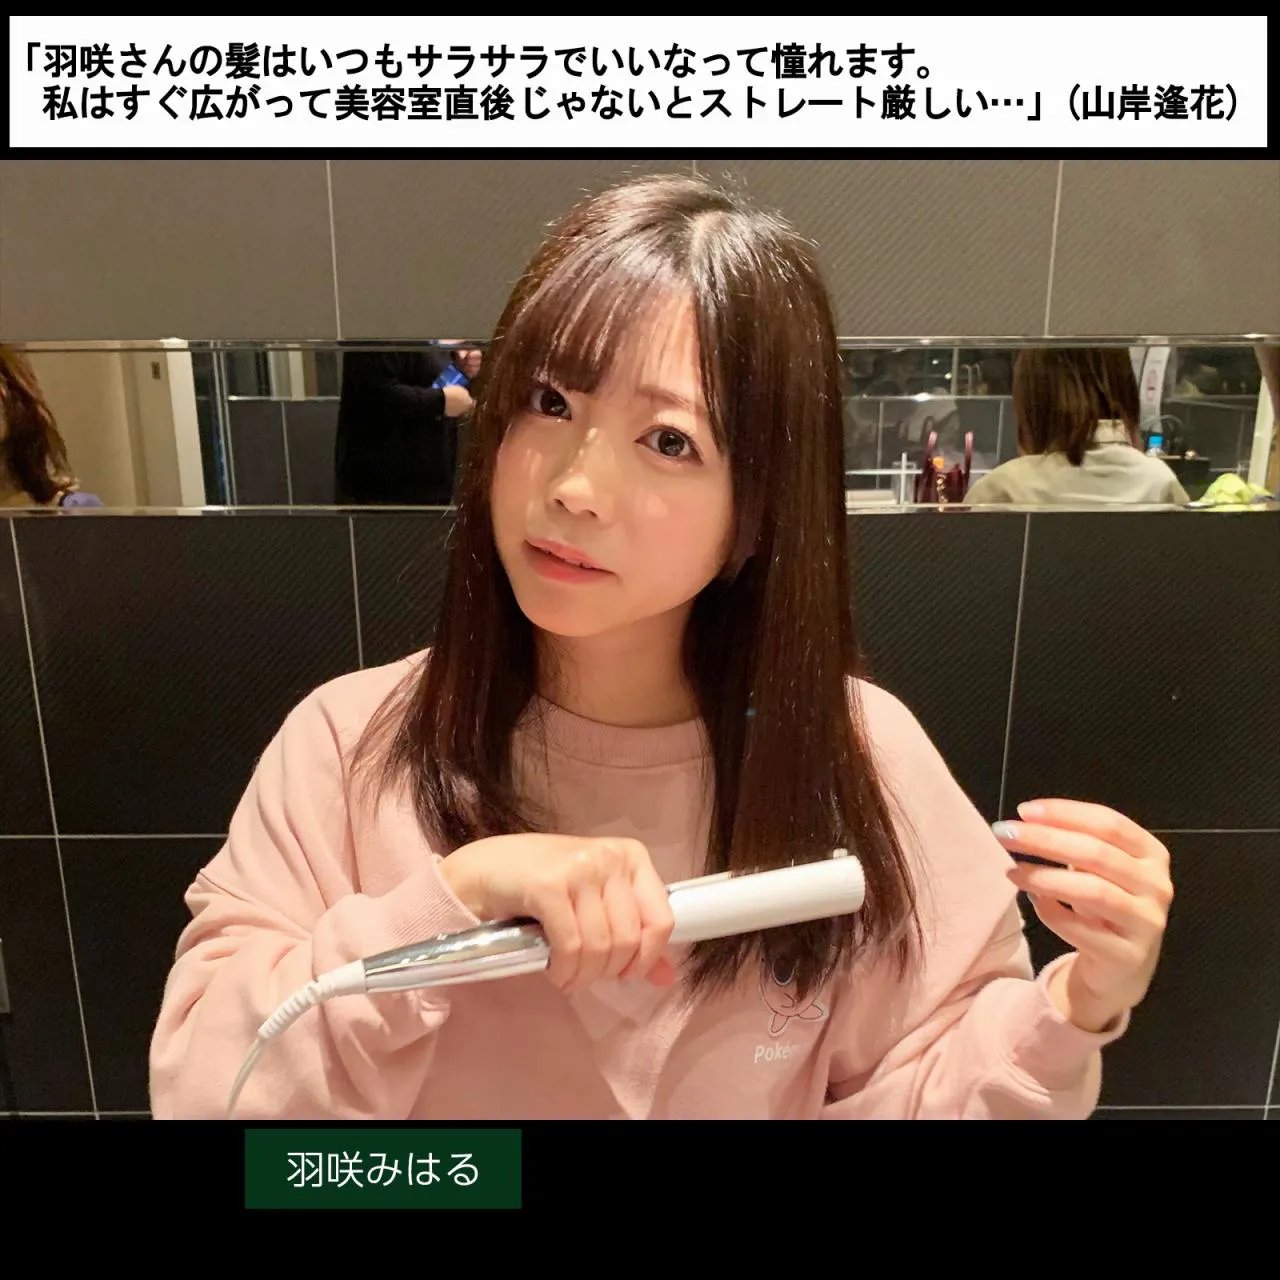  「羽咲さんの髪はいつもサラサラでいいなって憧れます。私はすぐ広がって美容室直後じゃないとストレート厳しい…」(山岸逢花)